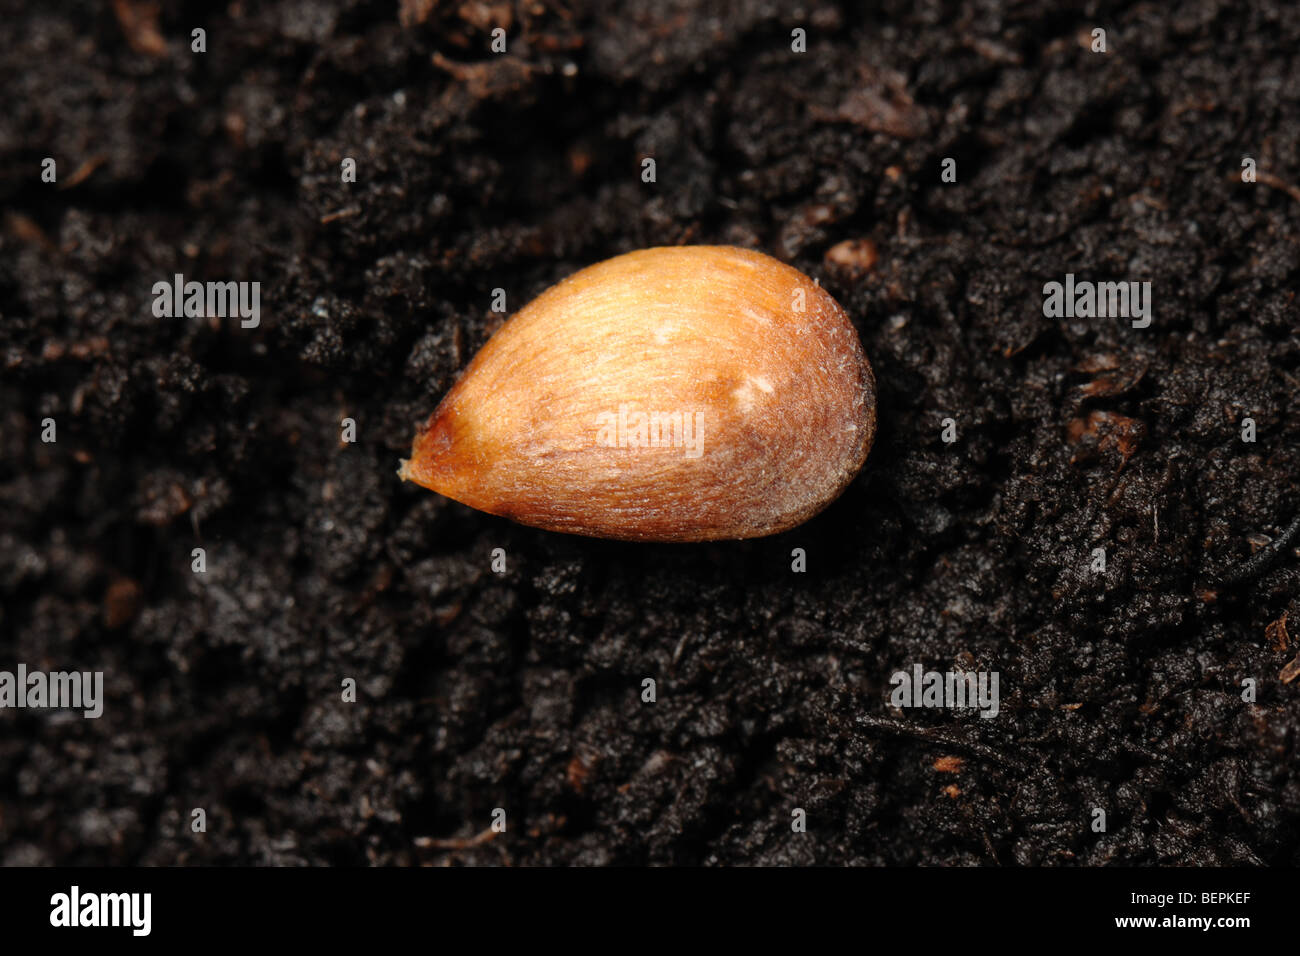 Apple découverte sur une surface du sol des semences Banque D'Images